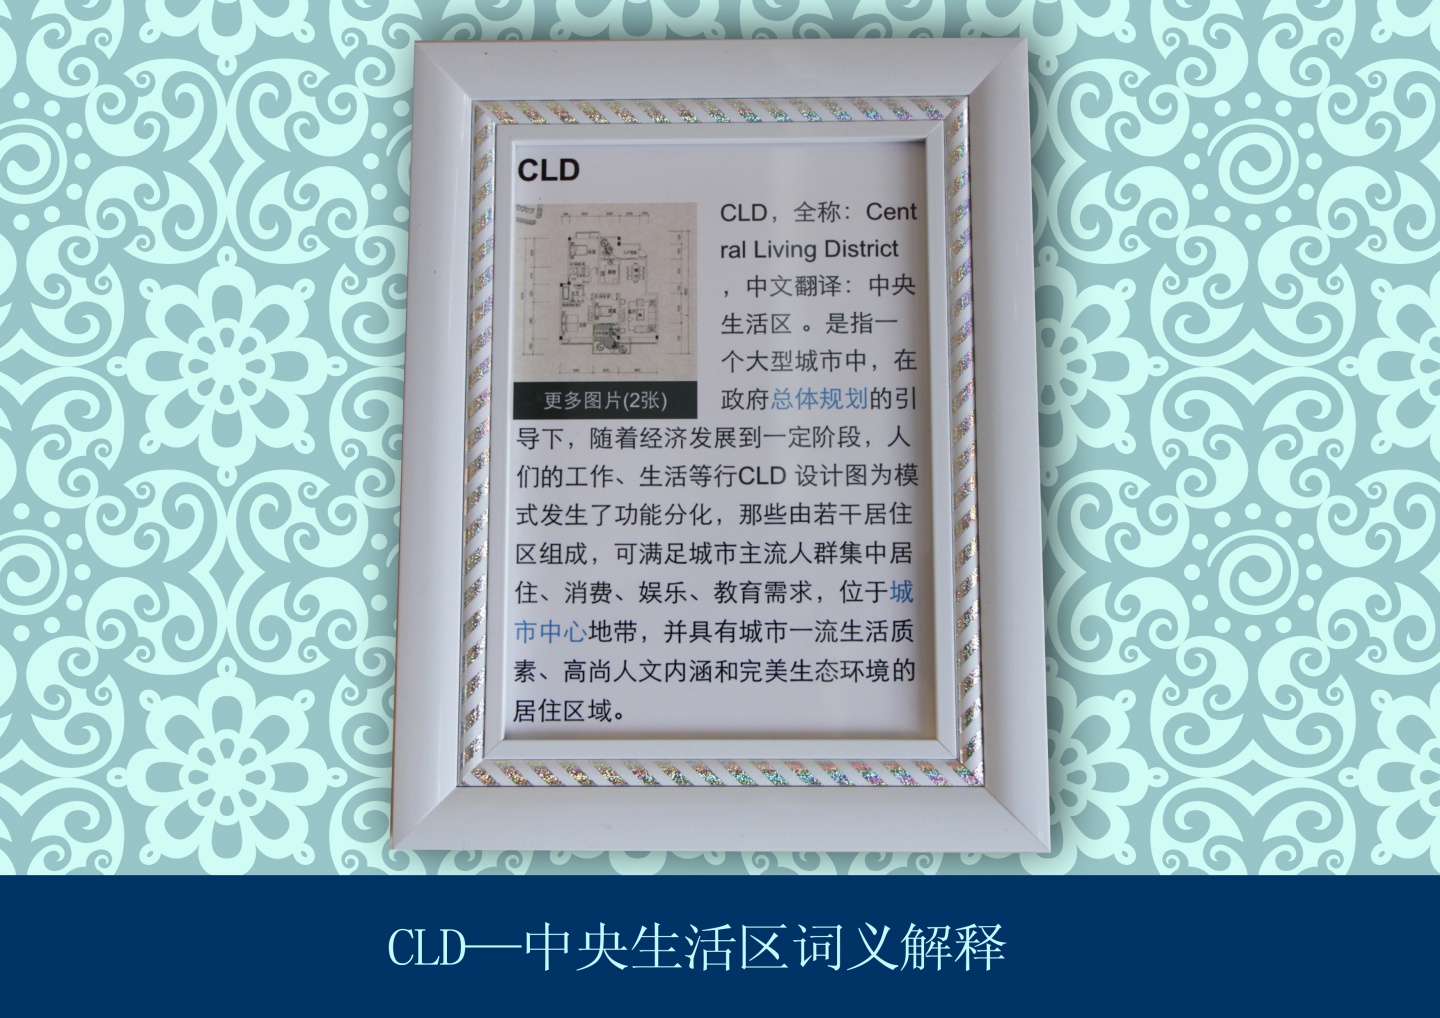 CLD-中央生活区的诠释